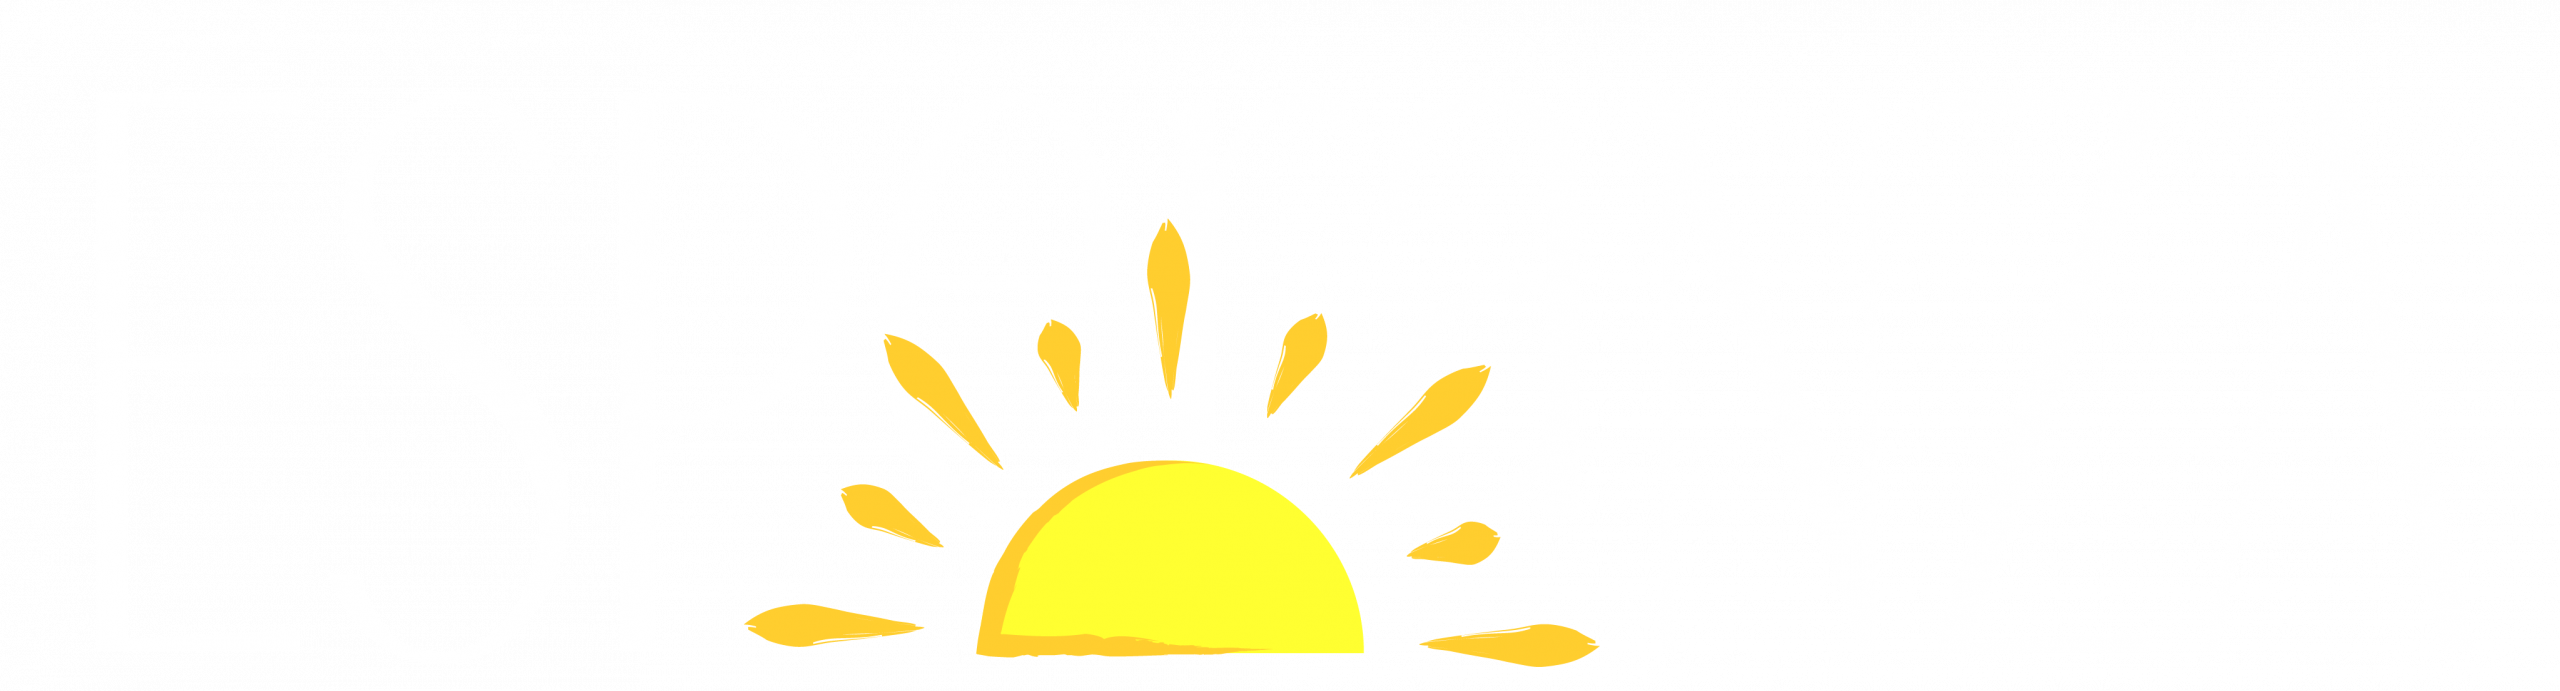 Esperanza School Logo